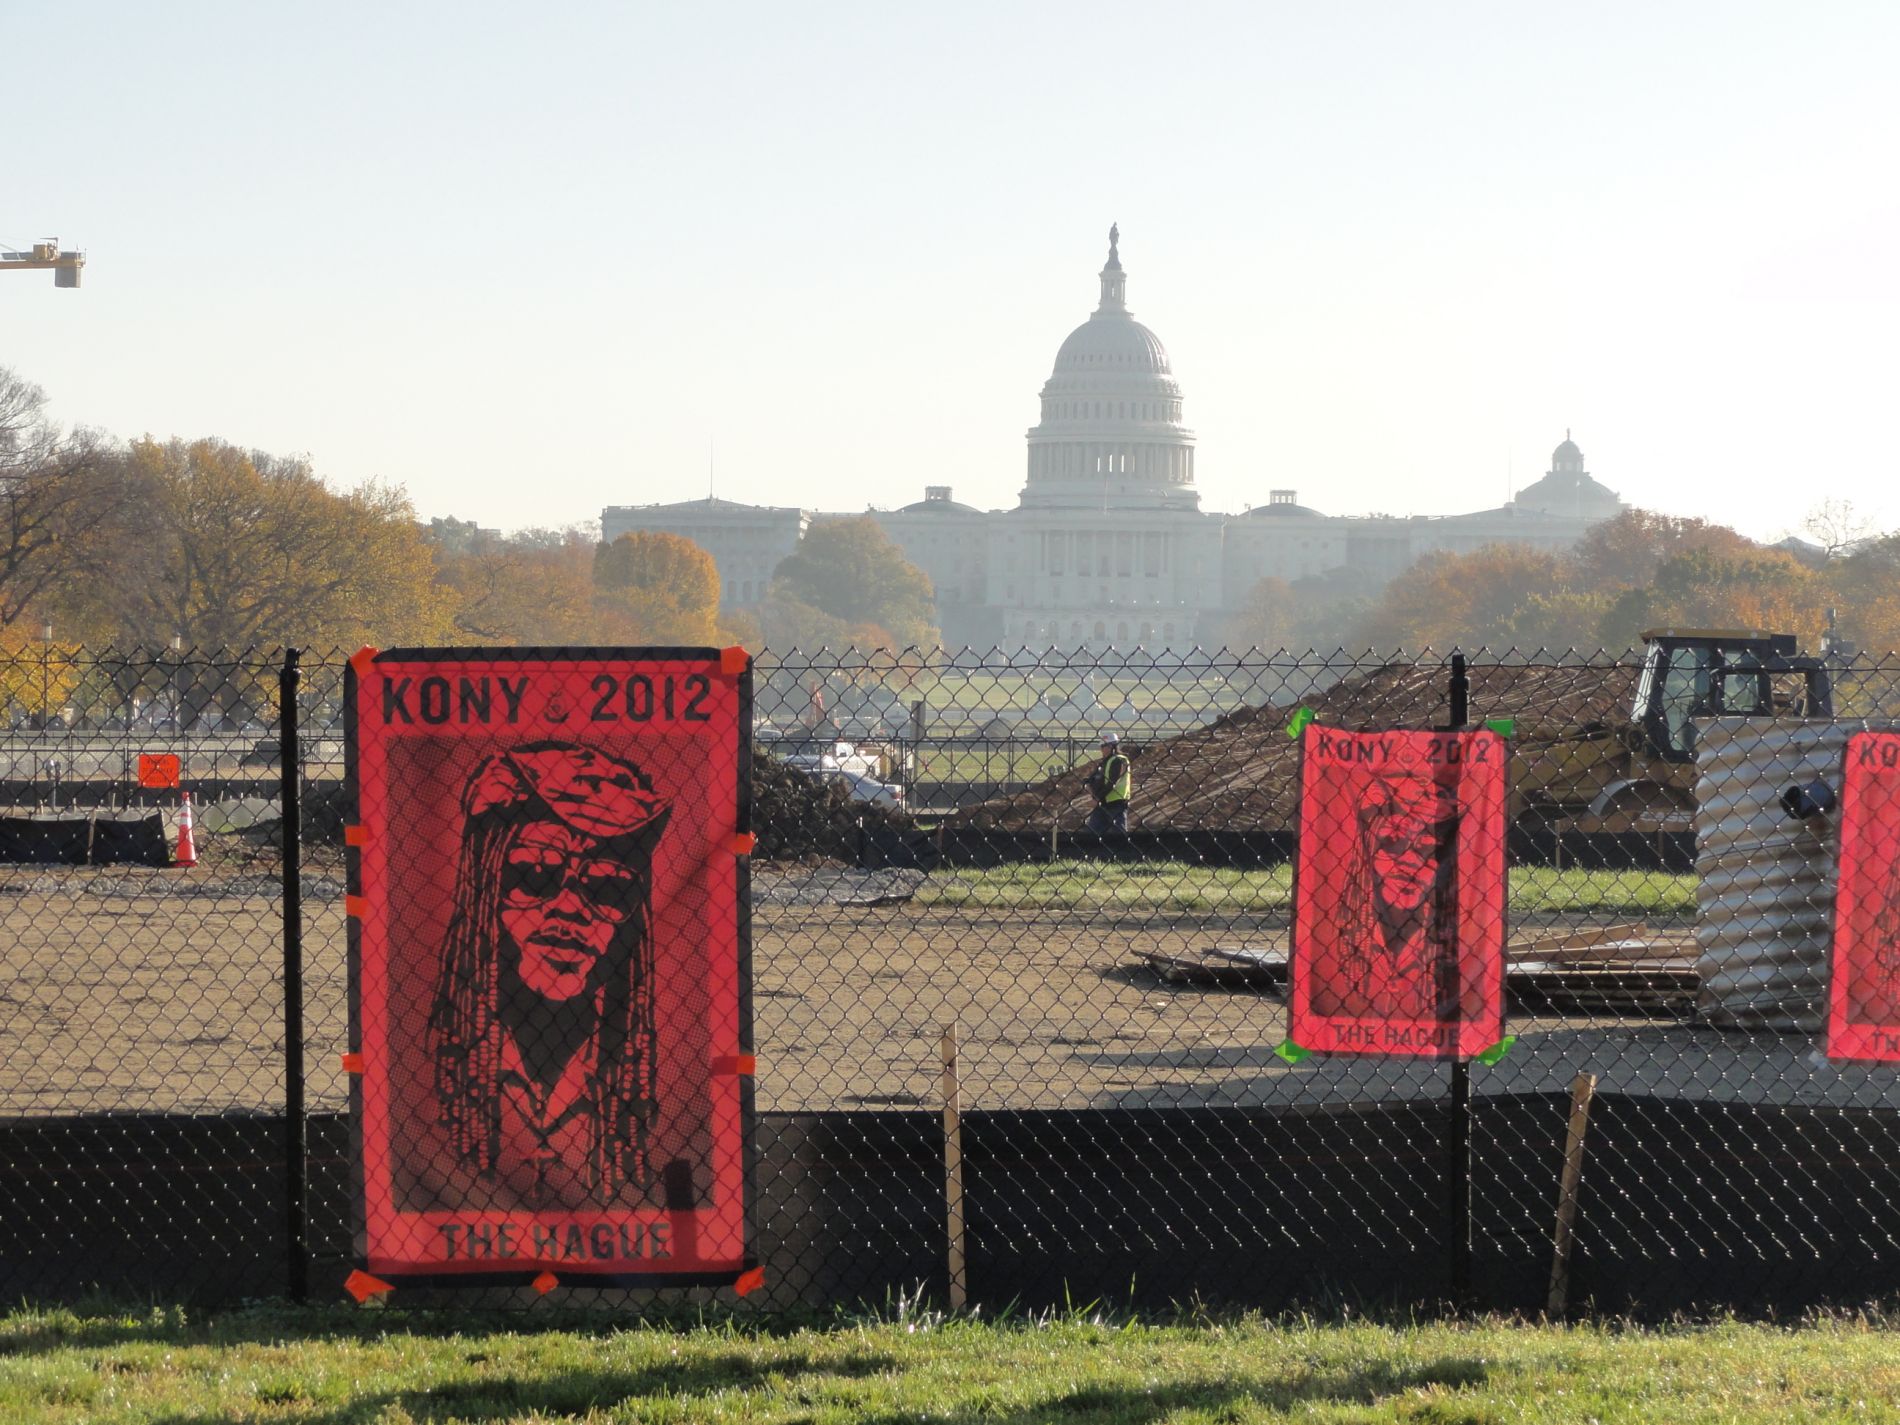 KONY 2012 Poster in Washington DC by Uncommon fritillary via Wikimedia Commons